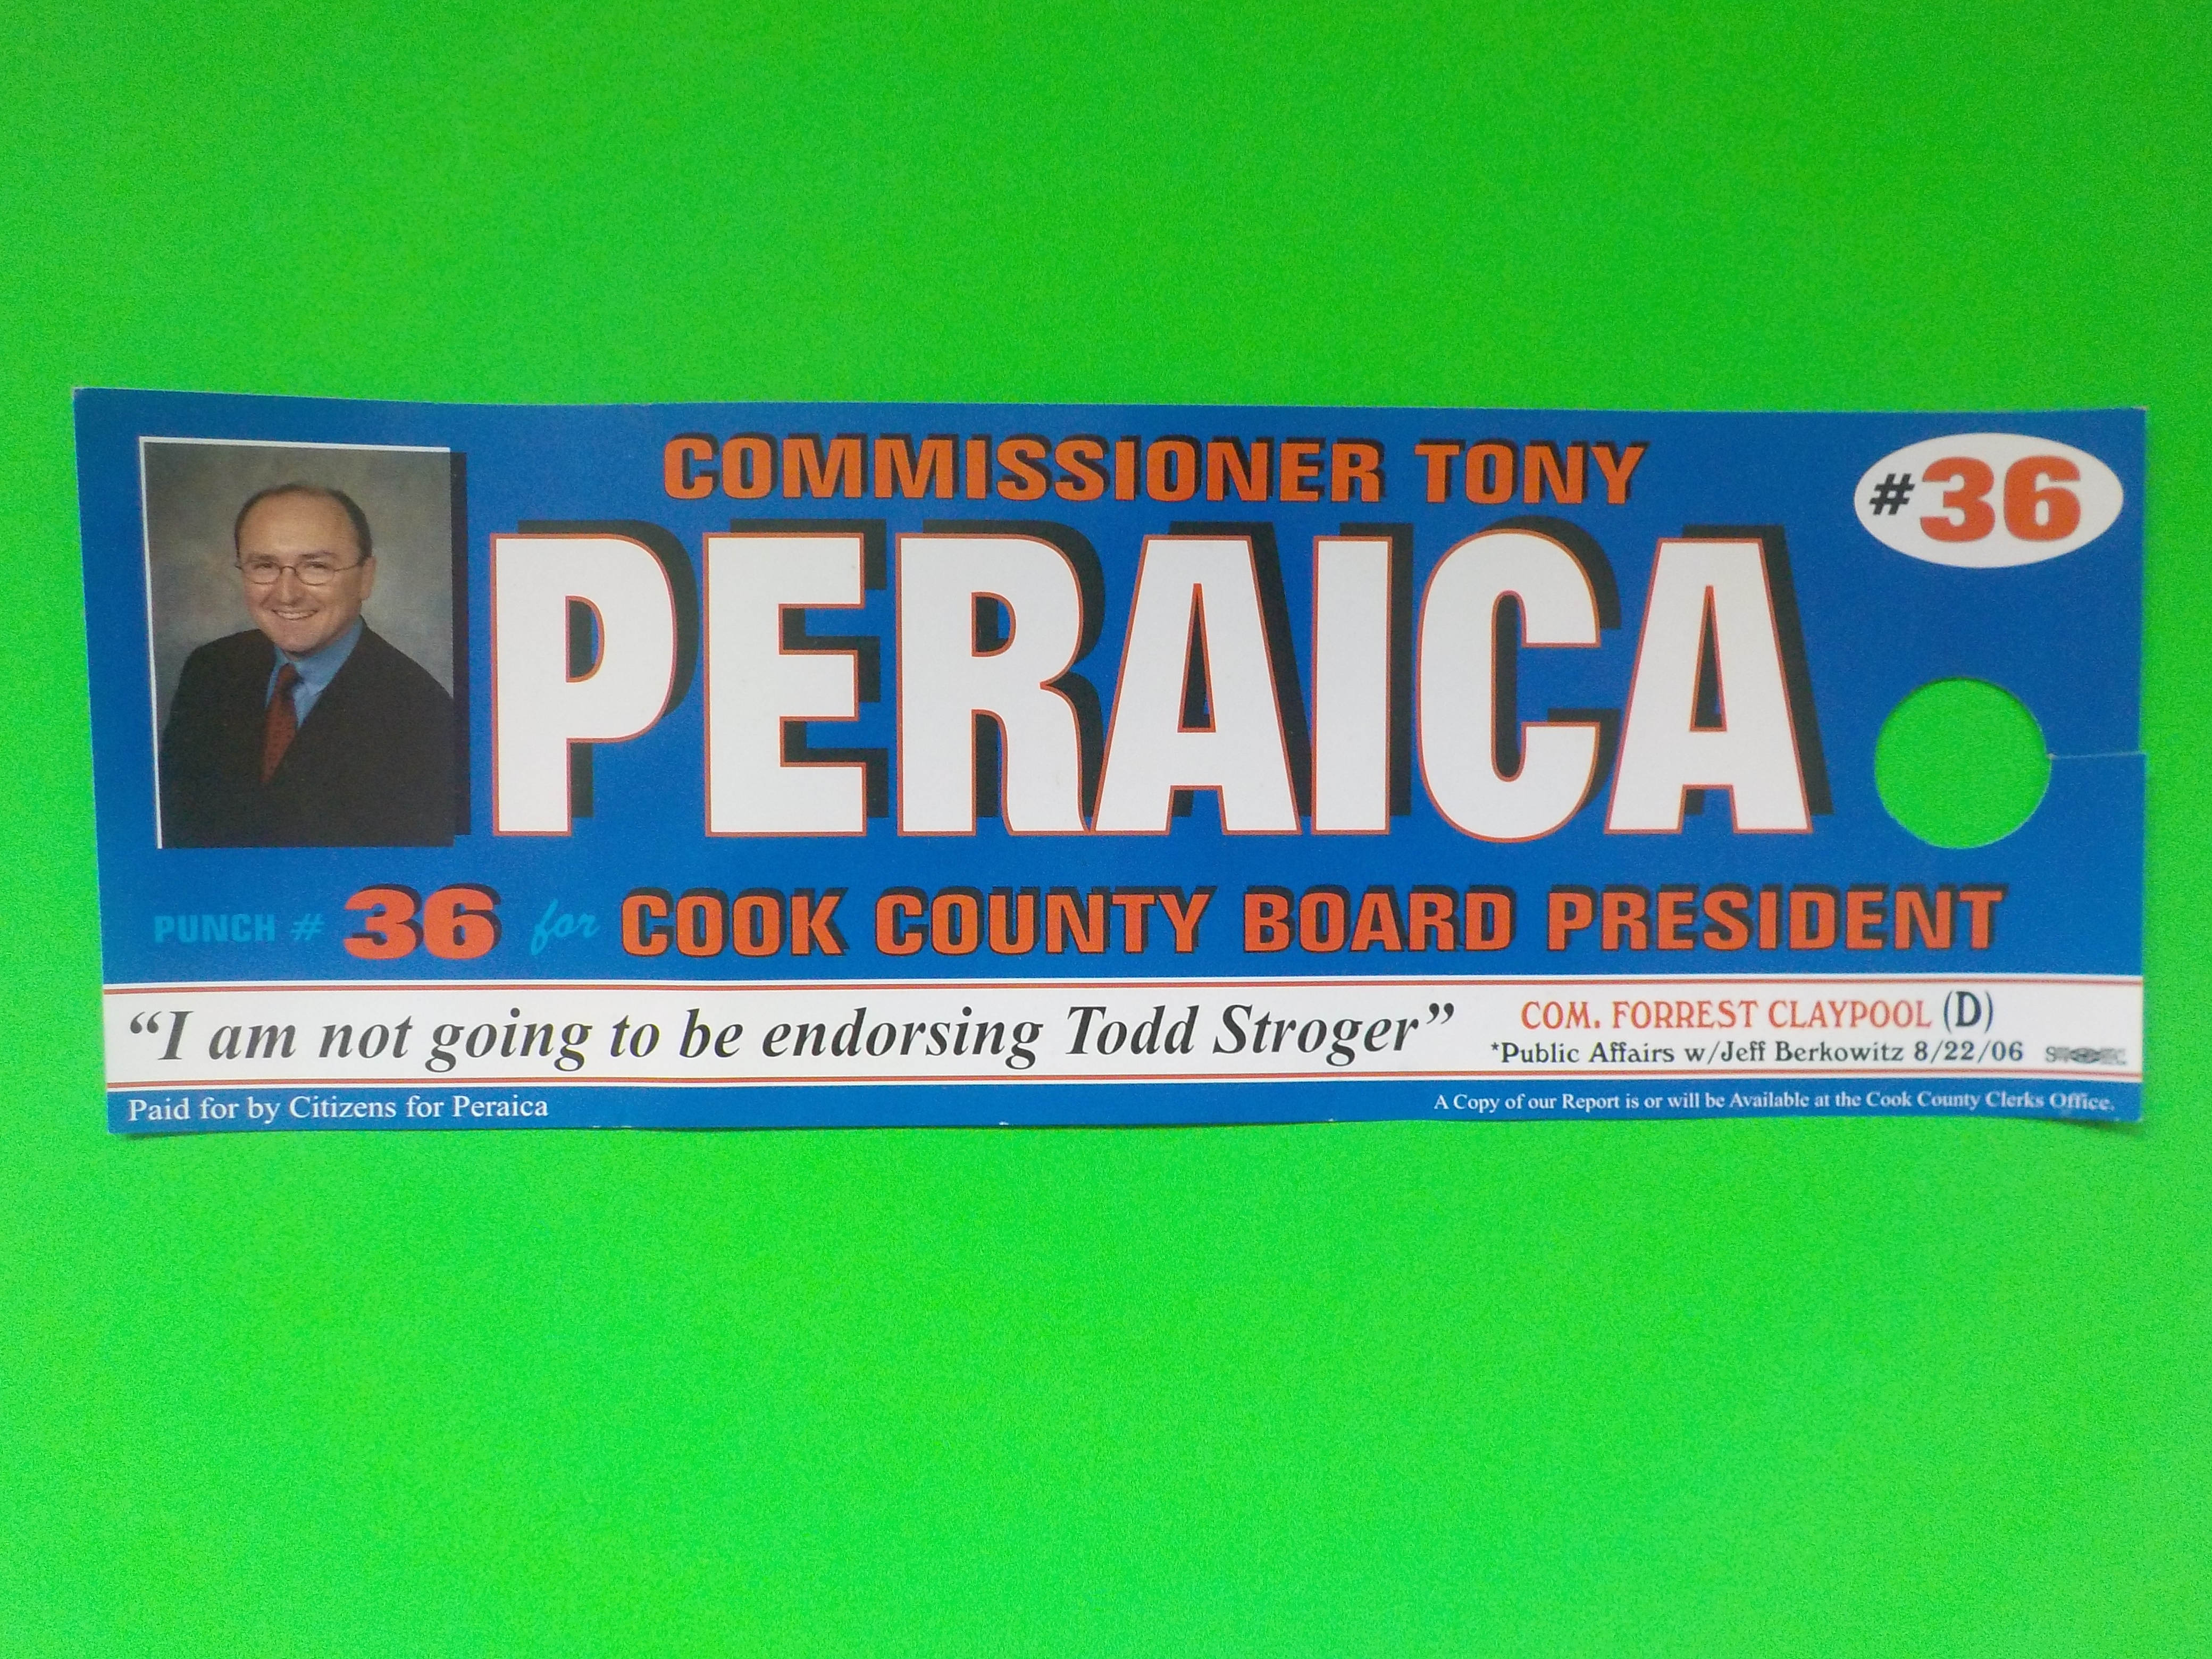 Tony Peraica